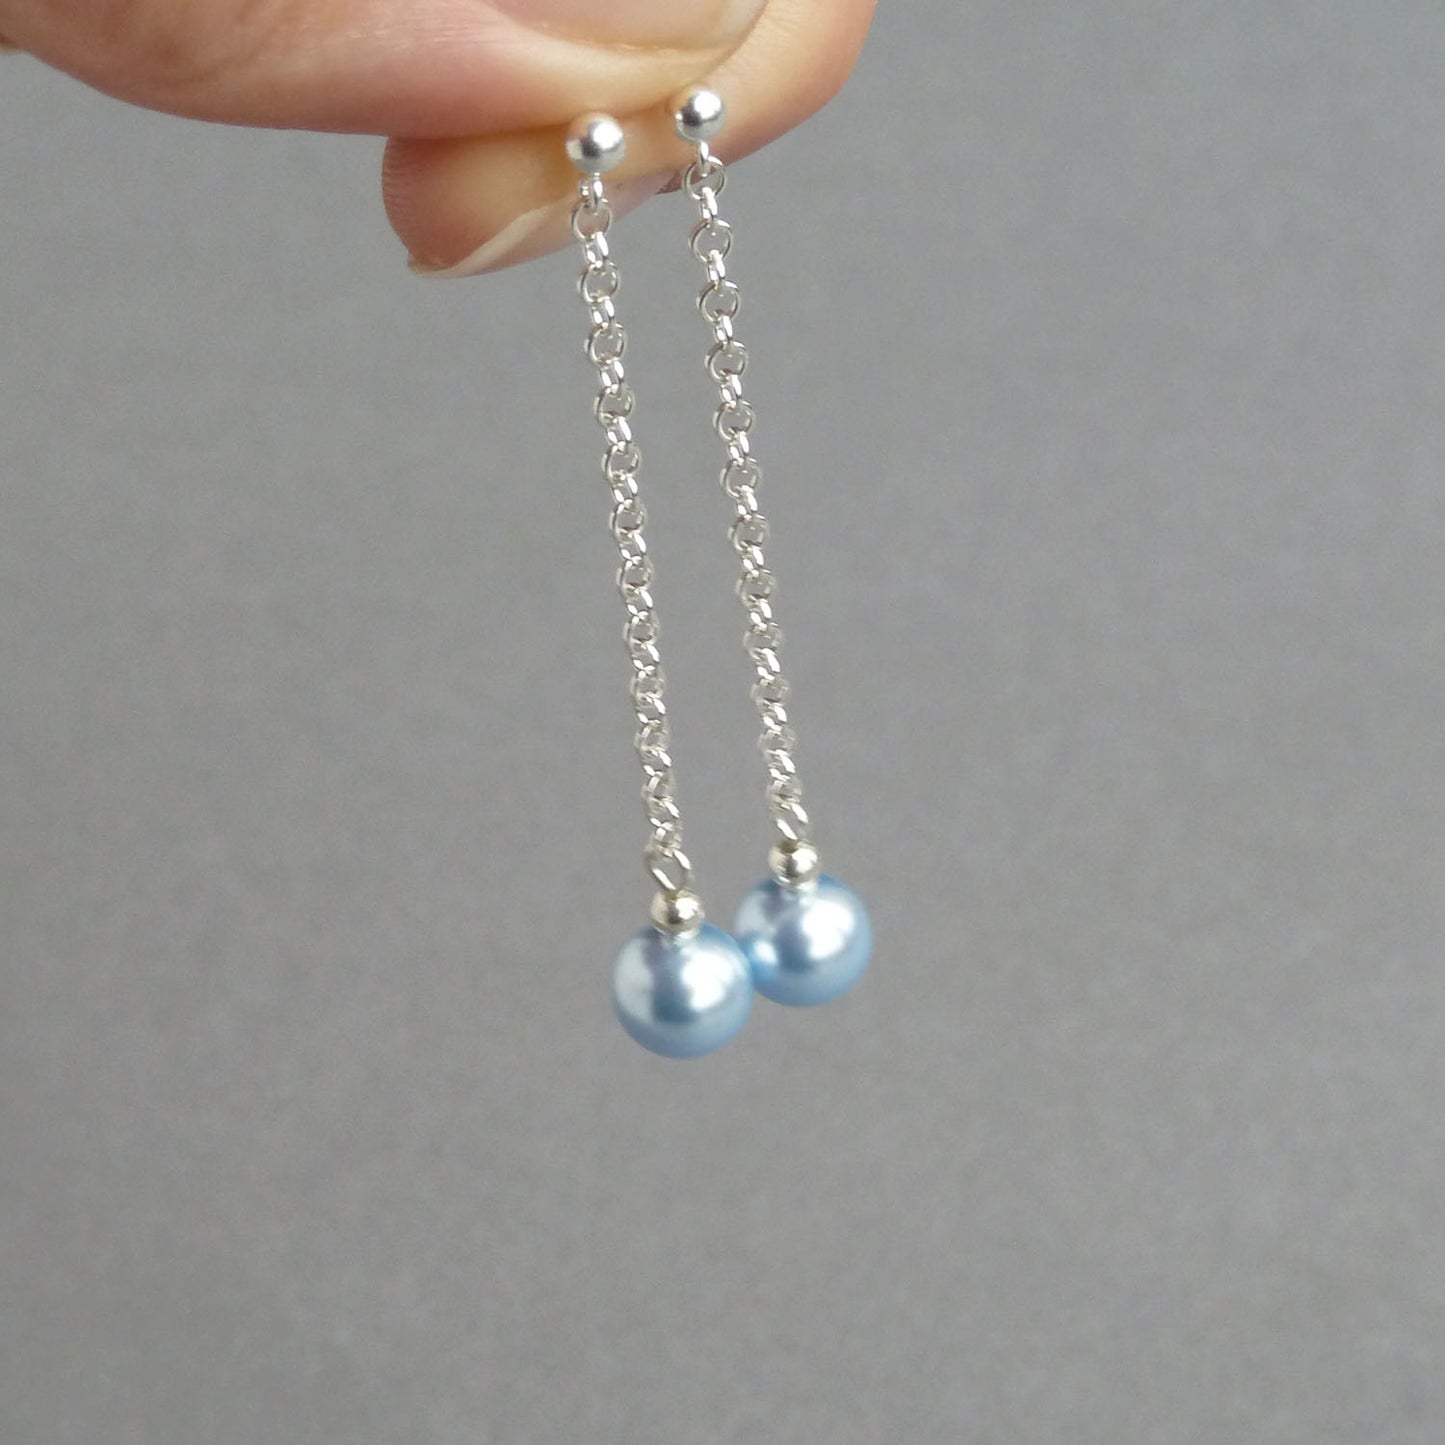 Dainty light blue pearl earrings